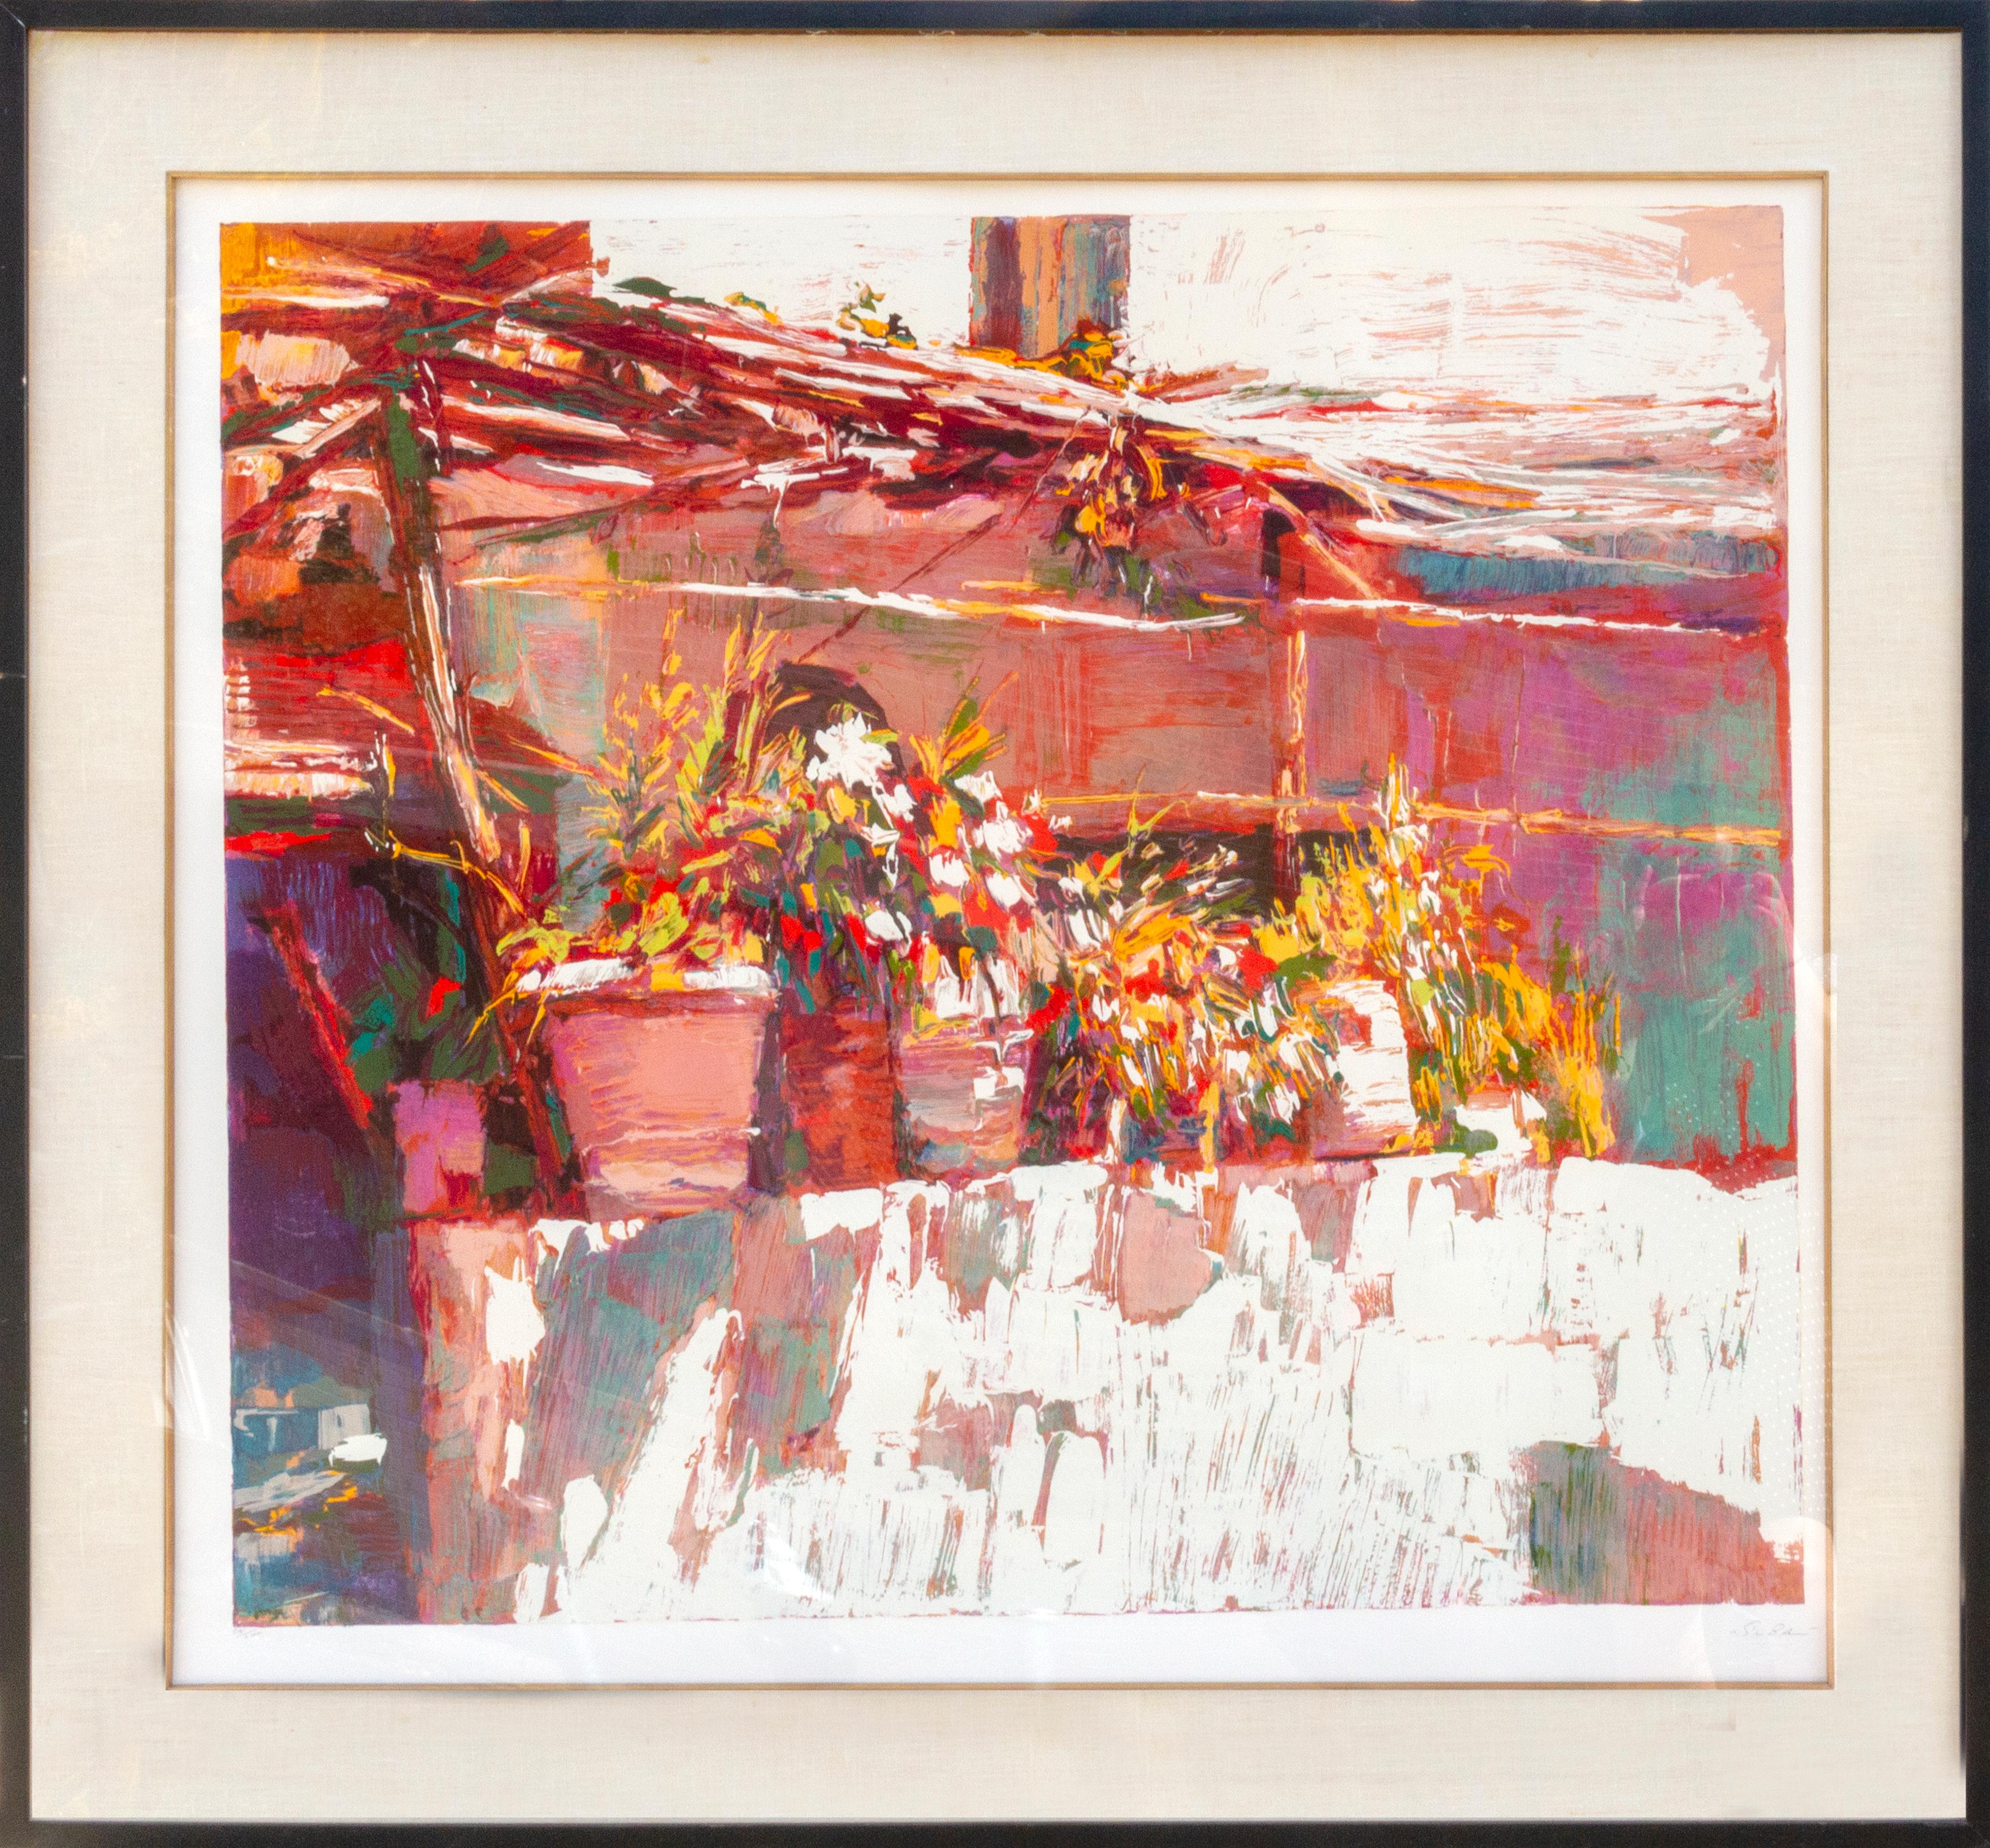 Artiste : Nicola Simbari, italien (1927 - 2012)
Titre : Balcon à Amalfi
Année : 1981
Médium : Sérigraphie, signée et numérotée au crayon
Edition : 58/200
Taille : 36 x 38 pouces
Taille du cadre : 46 x 50 pouces